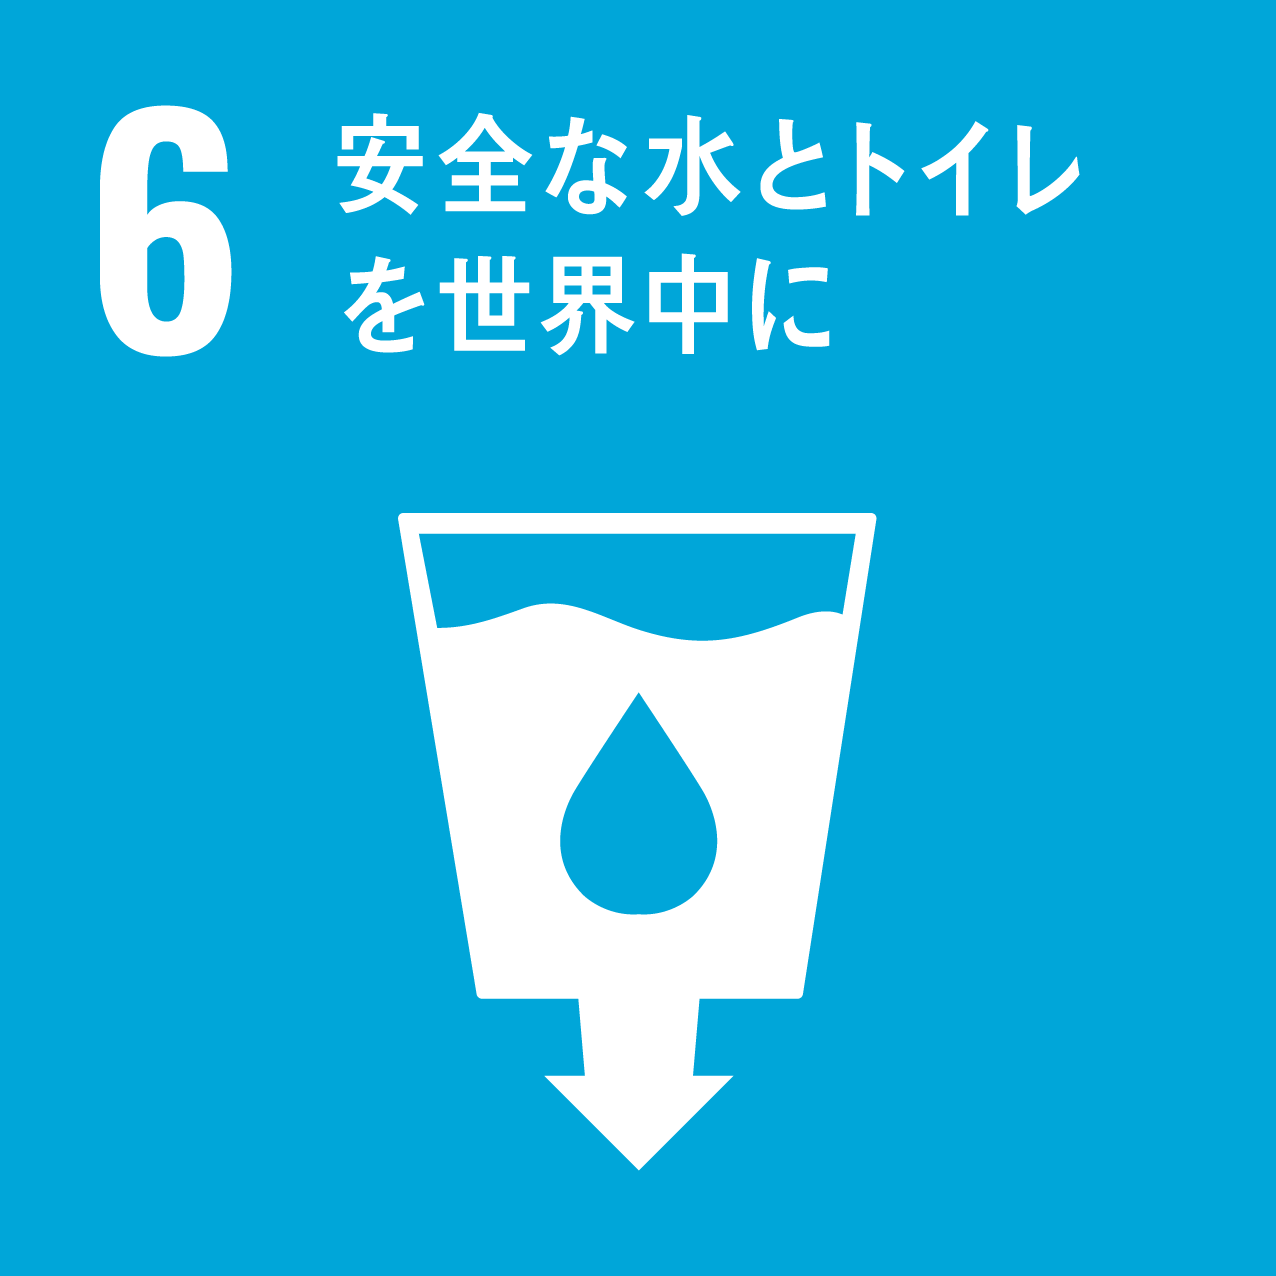 6.安全な水とトイレを世界中に|SDGs（持続可能な開発目標）